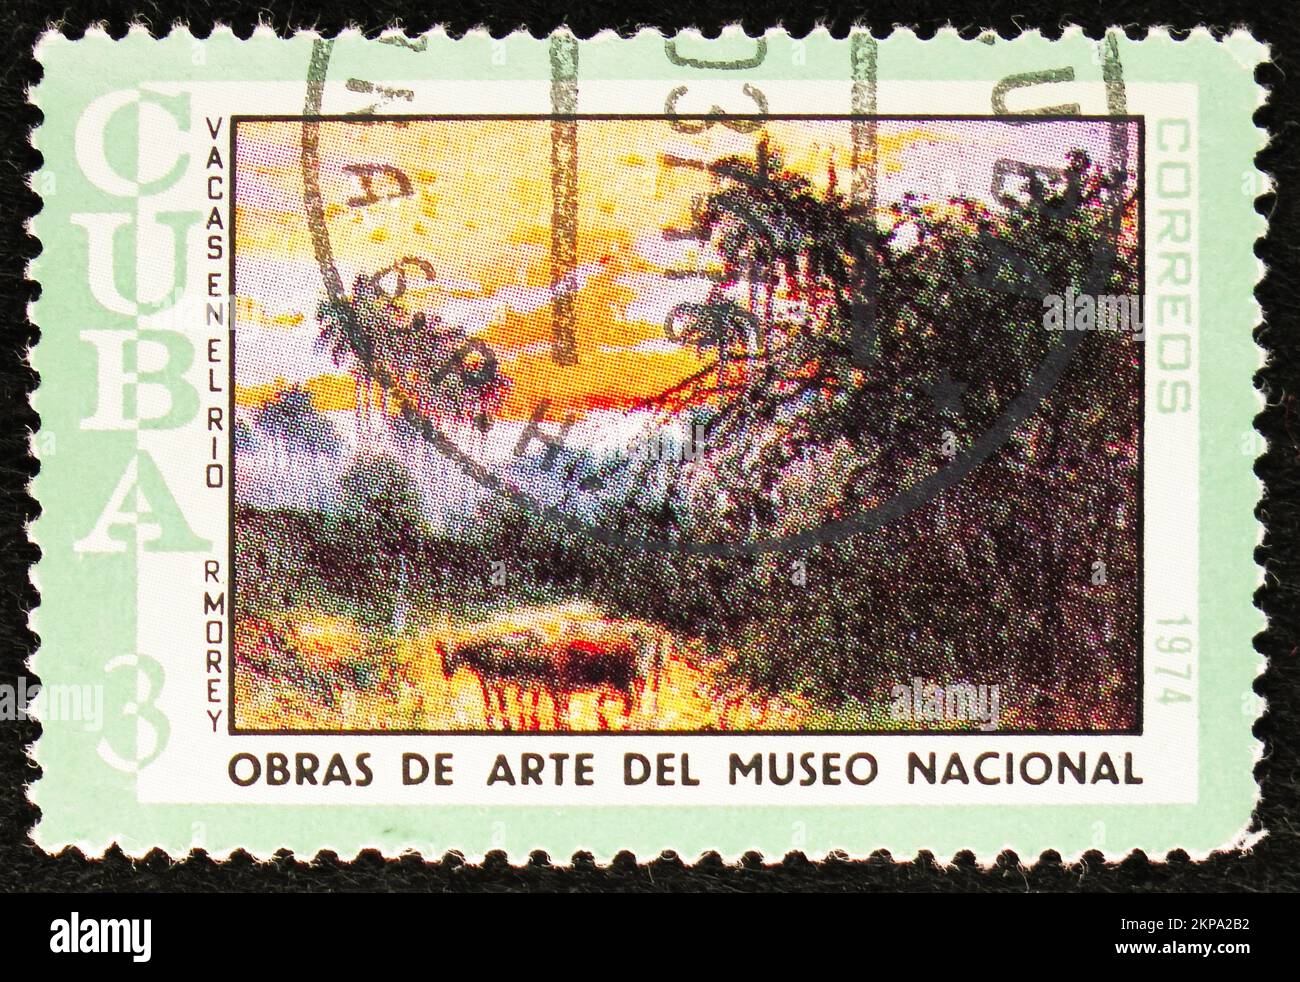 MOSCOU, RUSSIE - 29 OCTOBRE 2022 : le timbre-poste imprimé à Cuba montre R. Morey, Cattle in River, peintures de la série du Musée national (1974), cir Banque D'Images